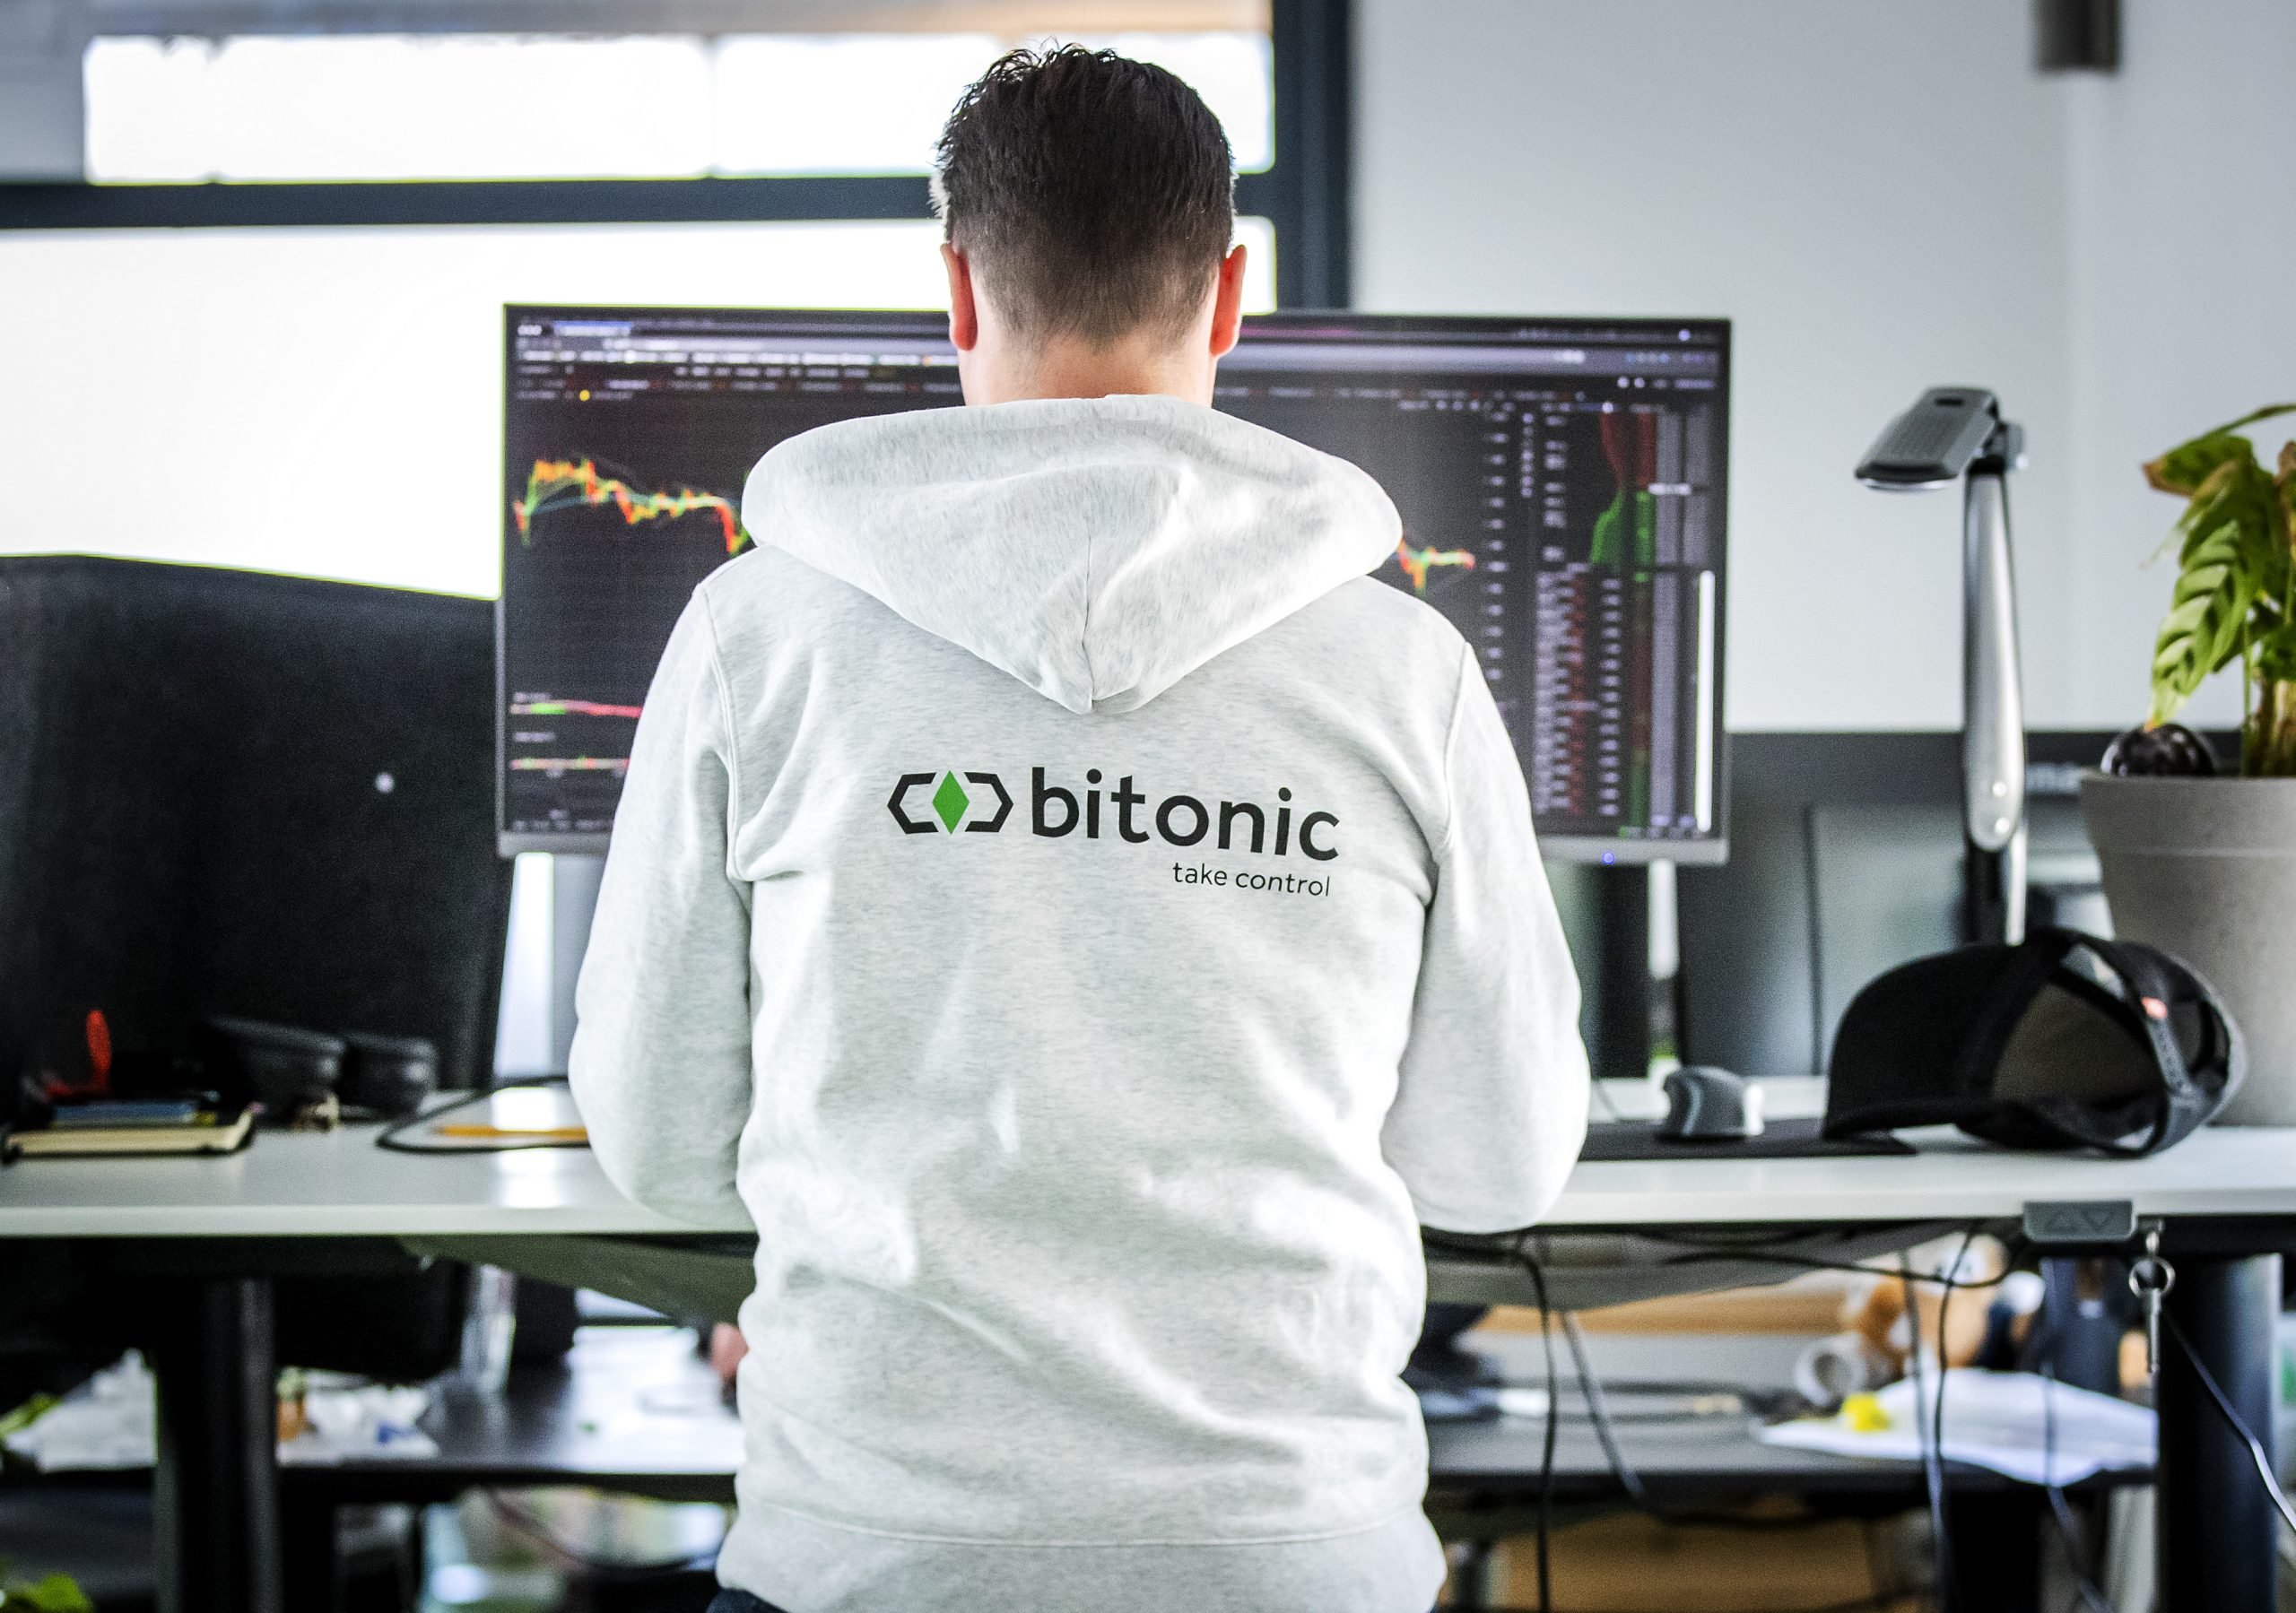 Medewerkers in het kantoor van Bitonic, een bedrijf dat euro's omwisselt in bitcoins of andere cryptovaluta.